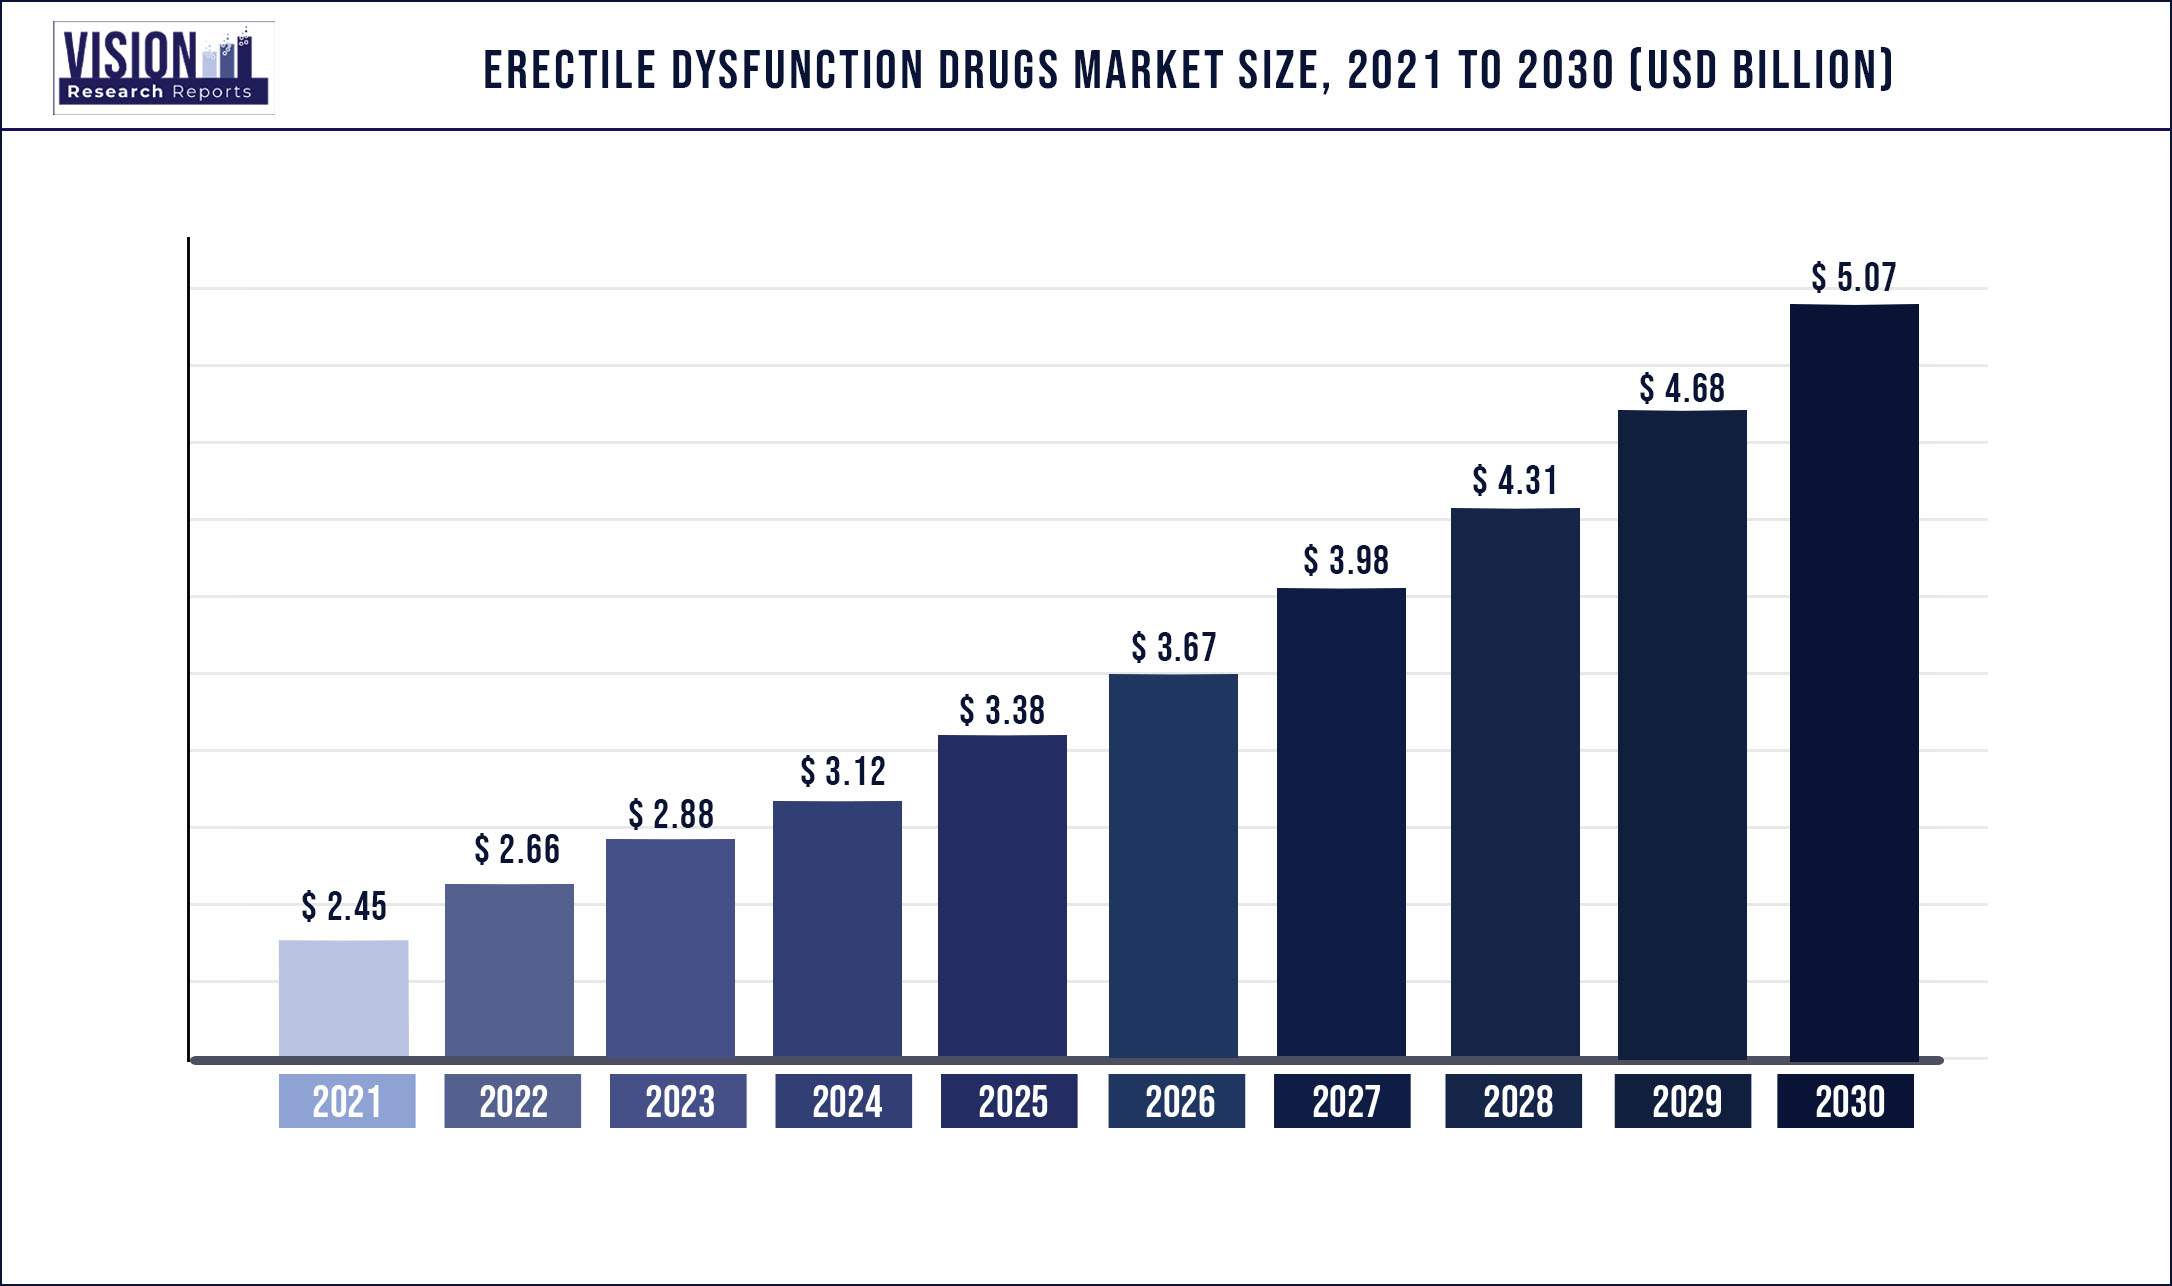 Erectile Dysfunction Drugs Market Size 2021 to 2030